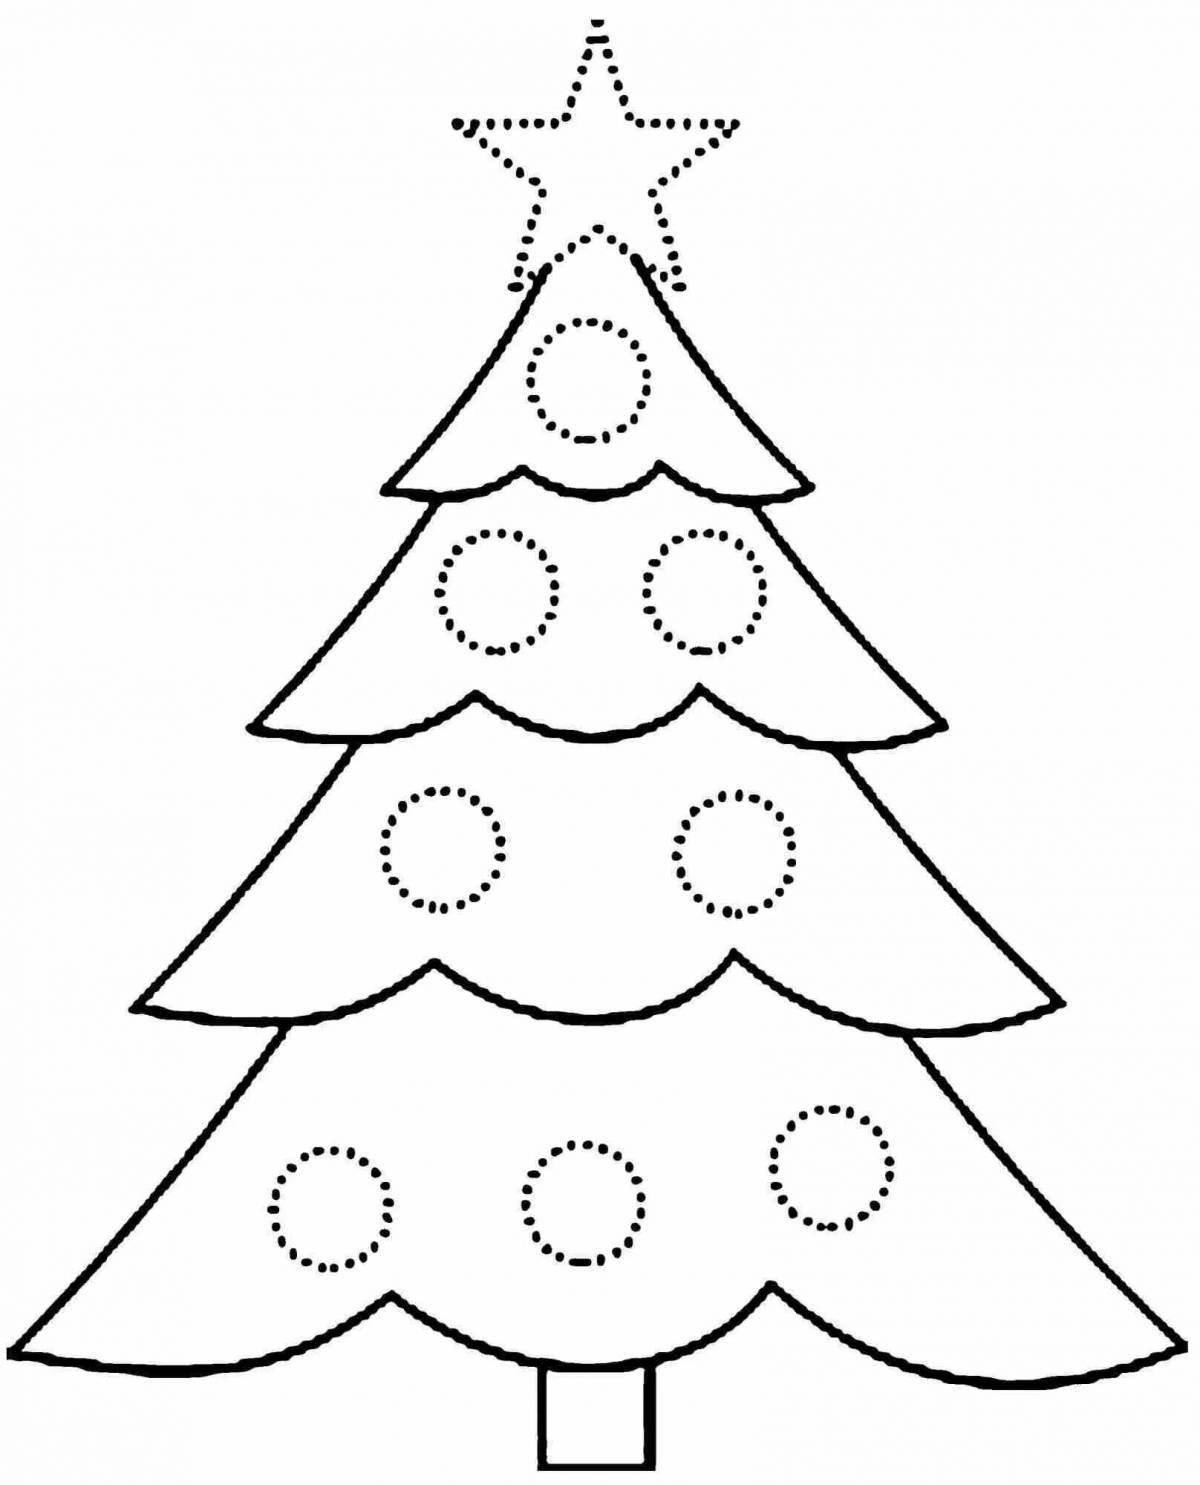 Цветная раскраска рождественская елка для детей